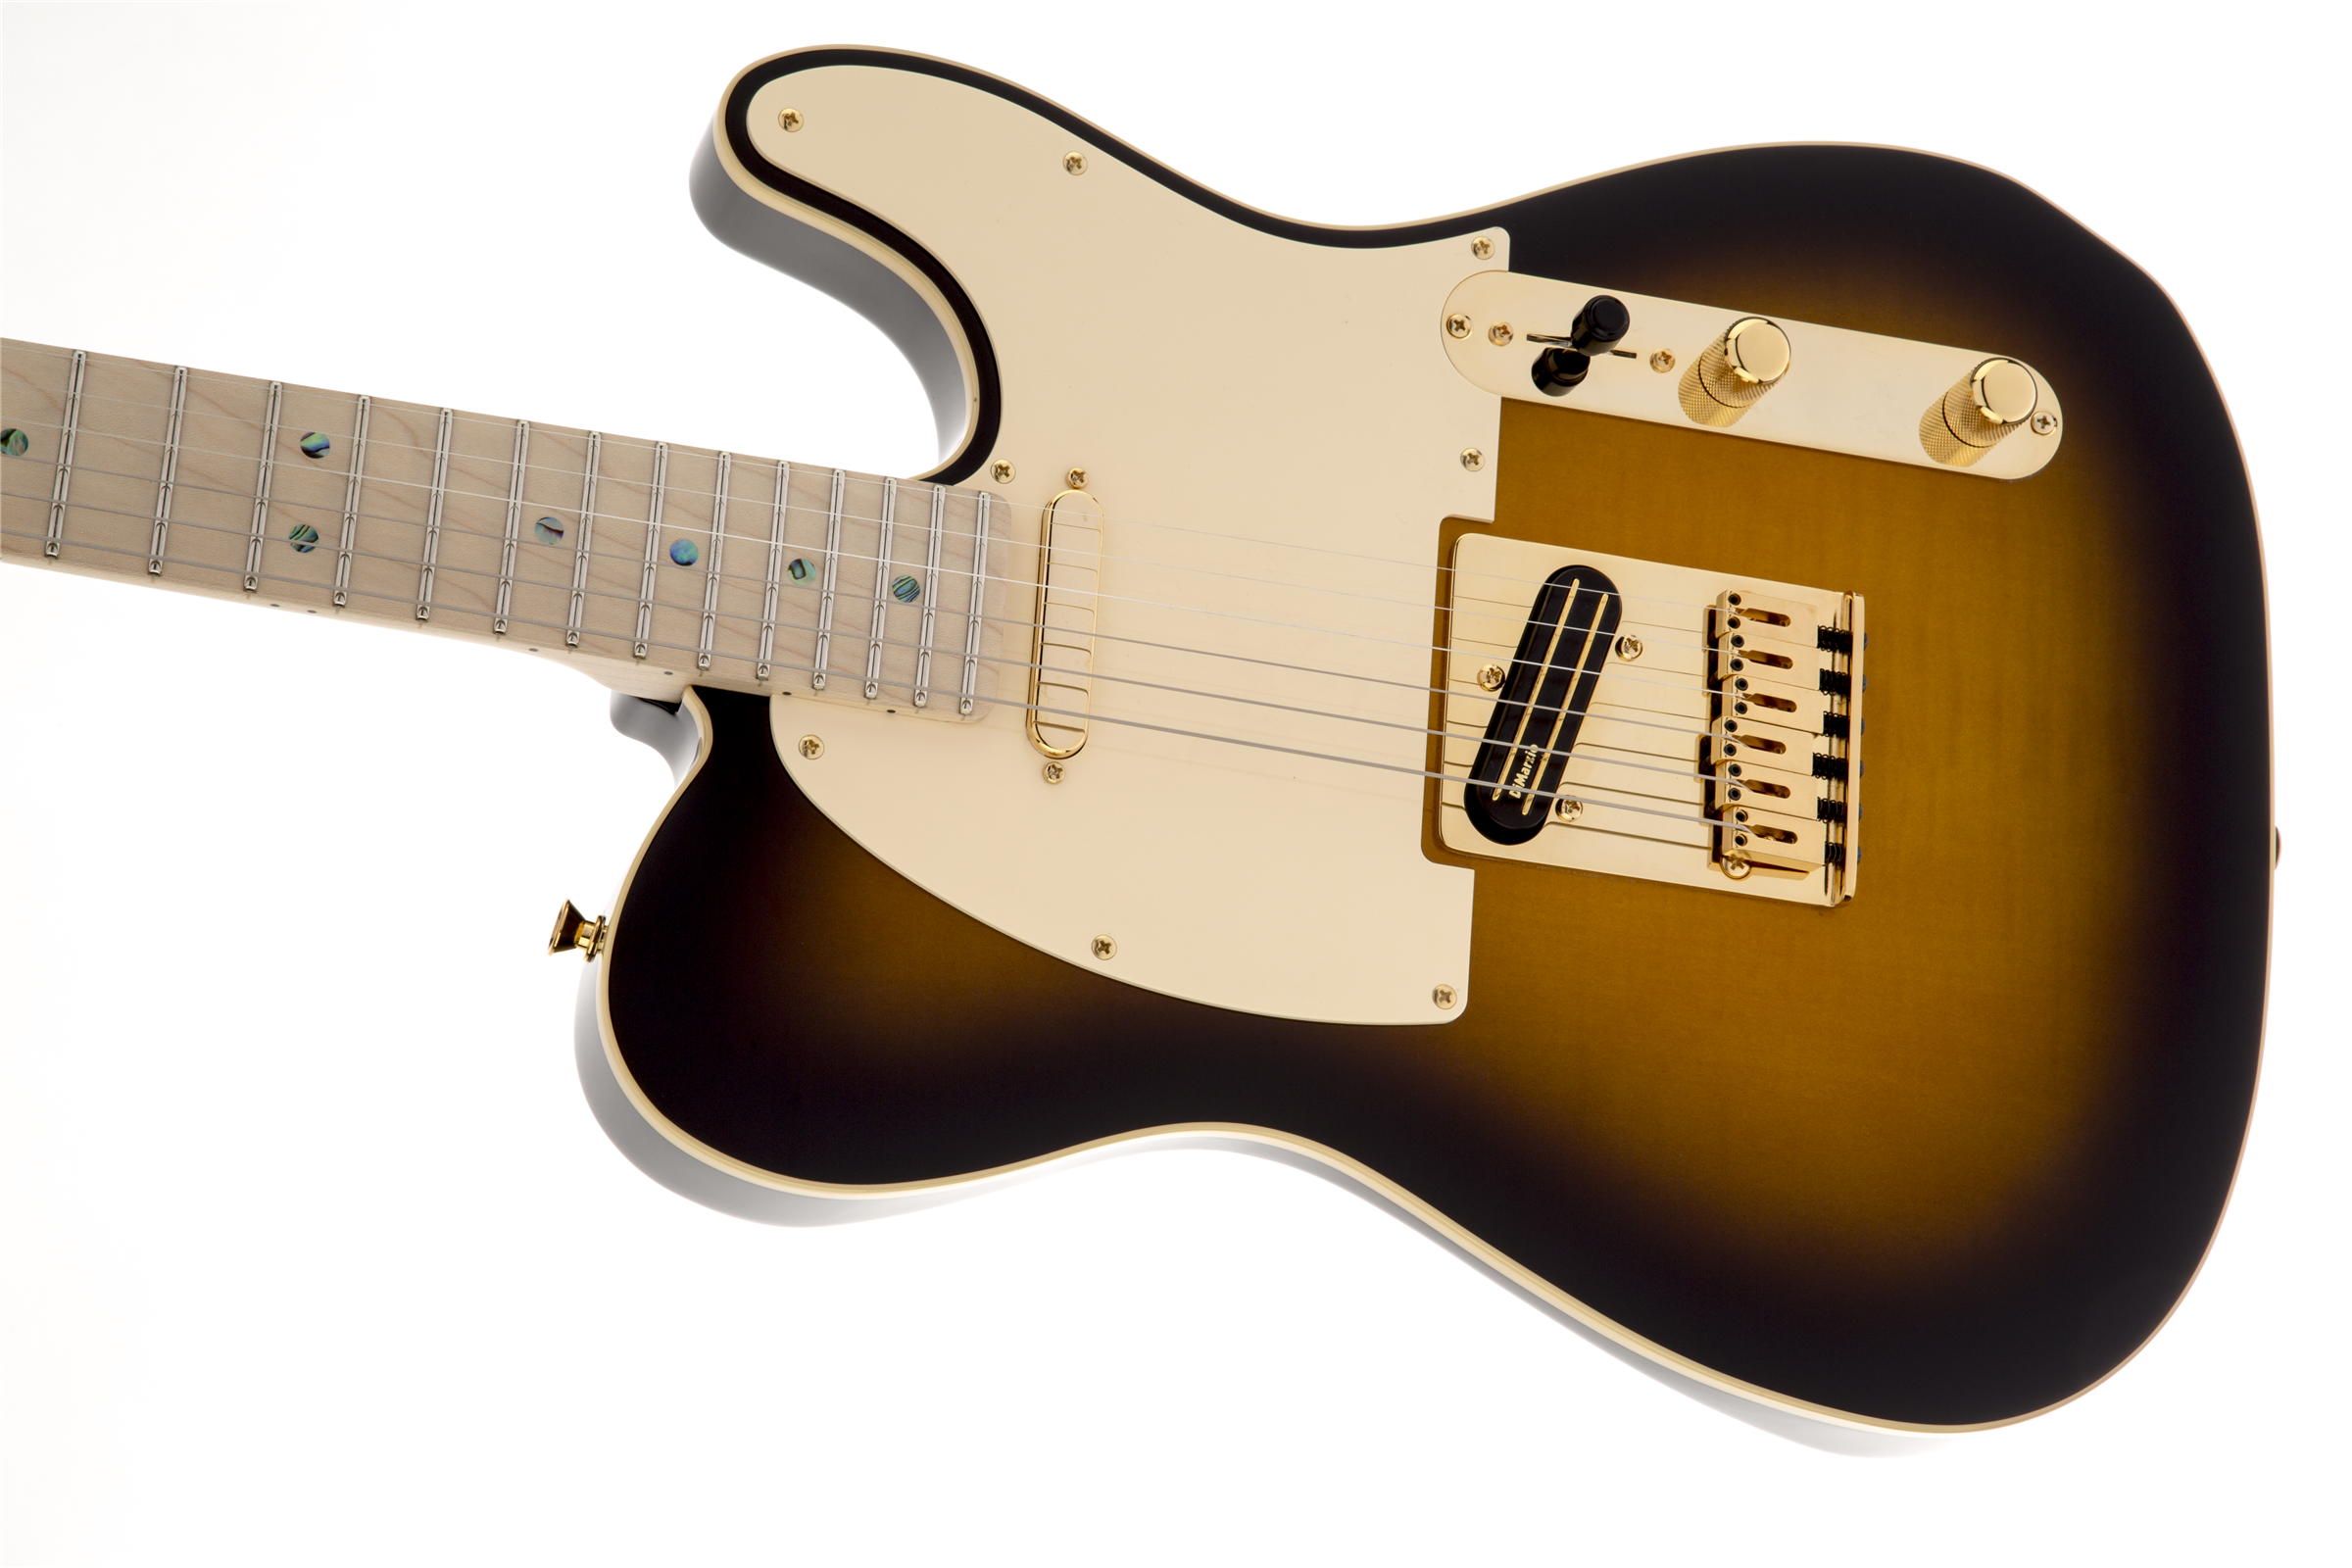 Fender Telecaster Richie Kotzen (jap, Mn) - Brown Sunburst - E-Gitarre in Teleform - Variation 4